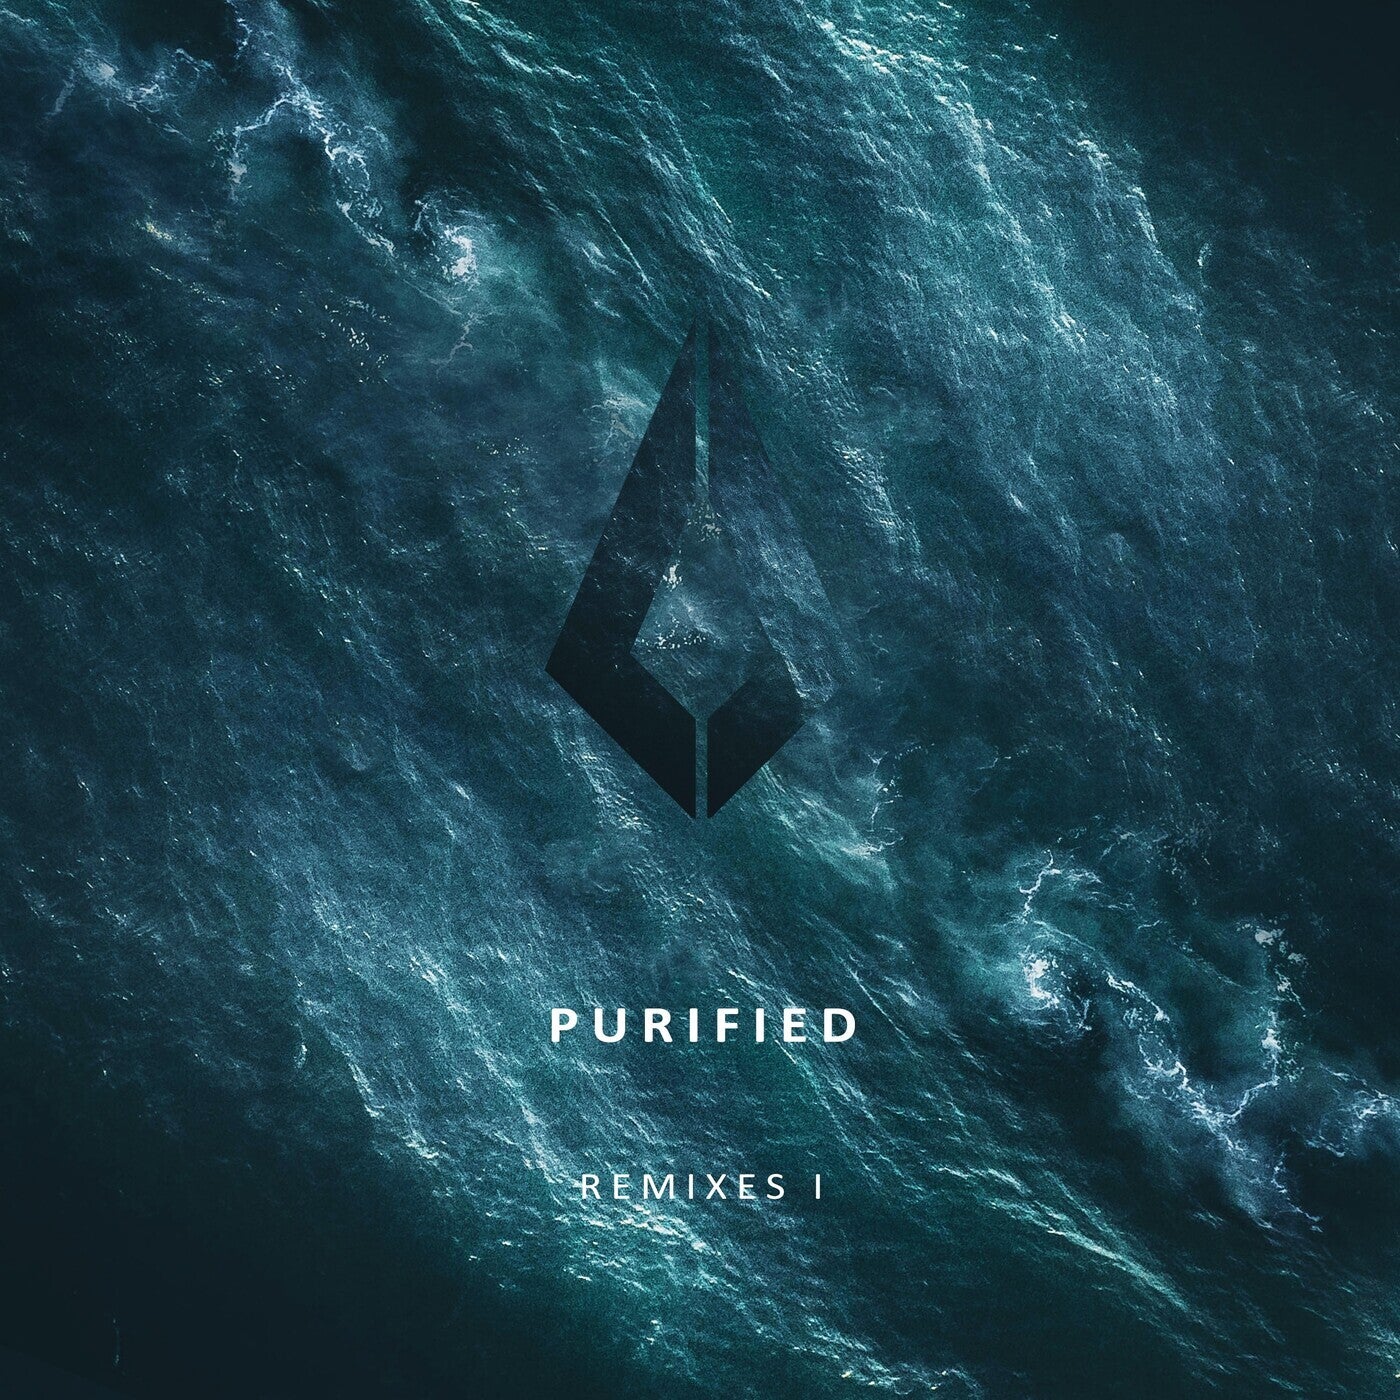 Purified Remixes I